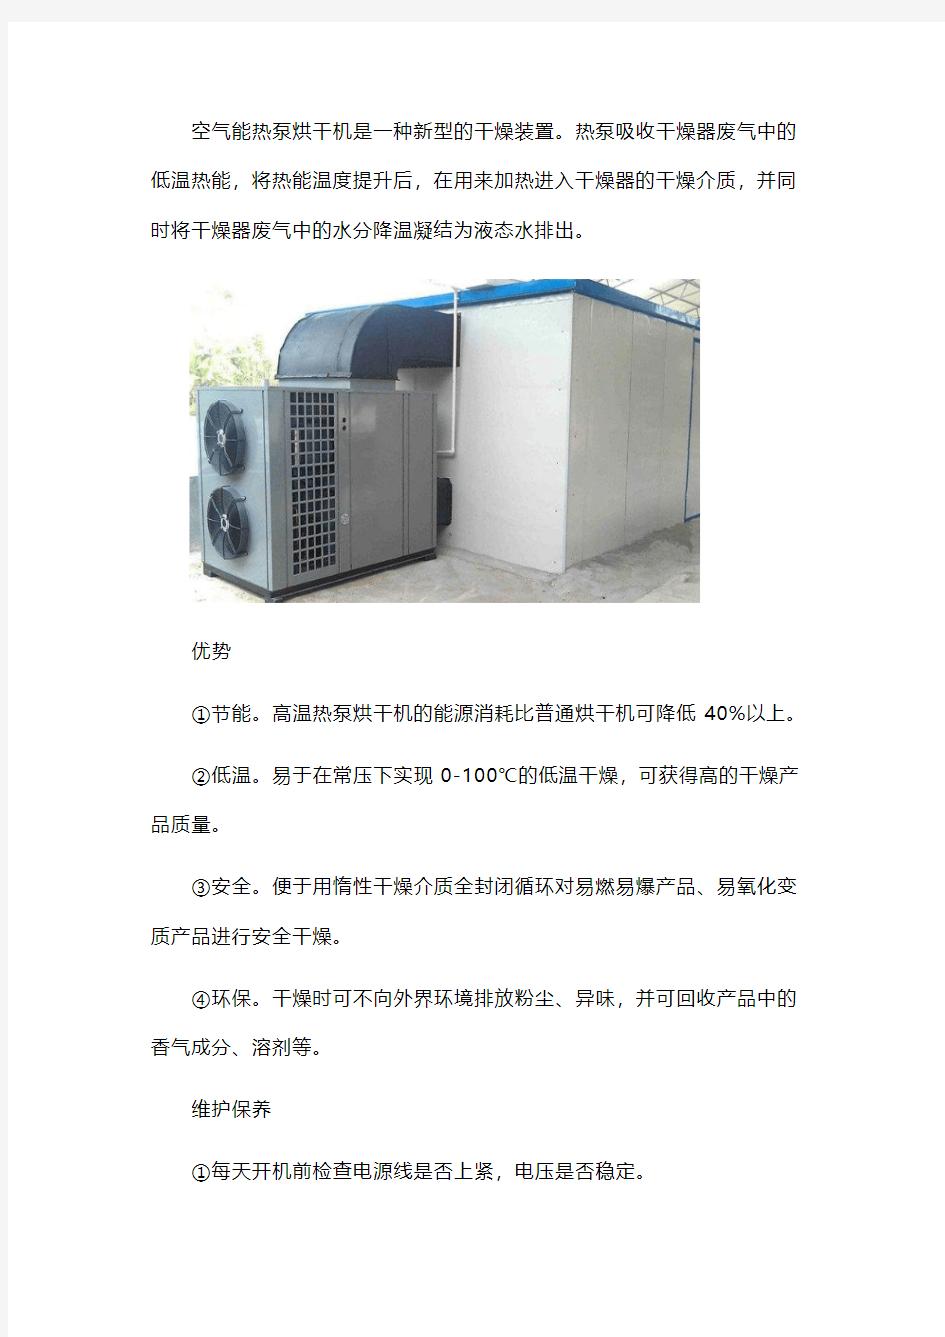 空气源热泵烘干机产品介绍